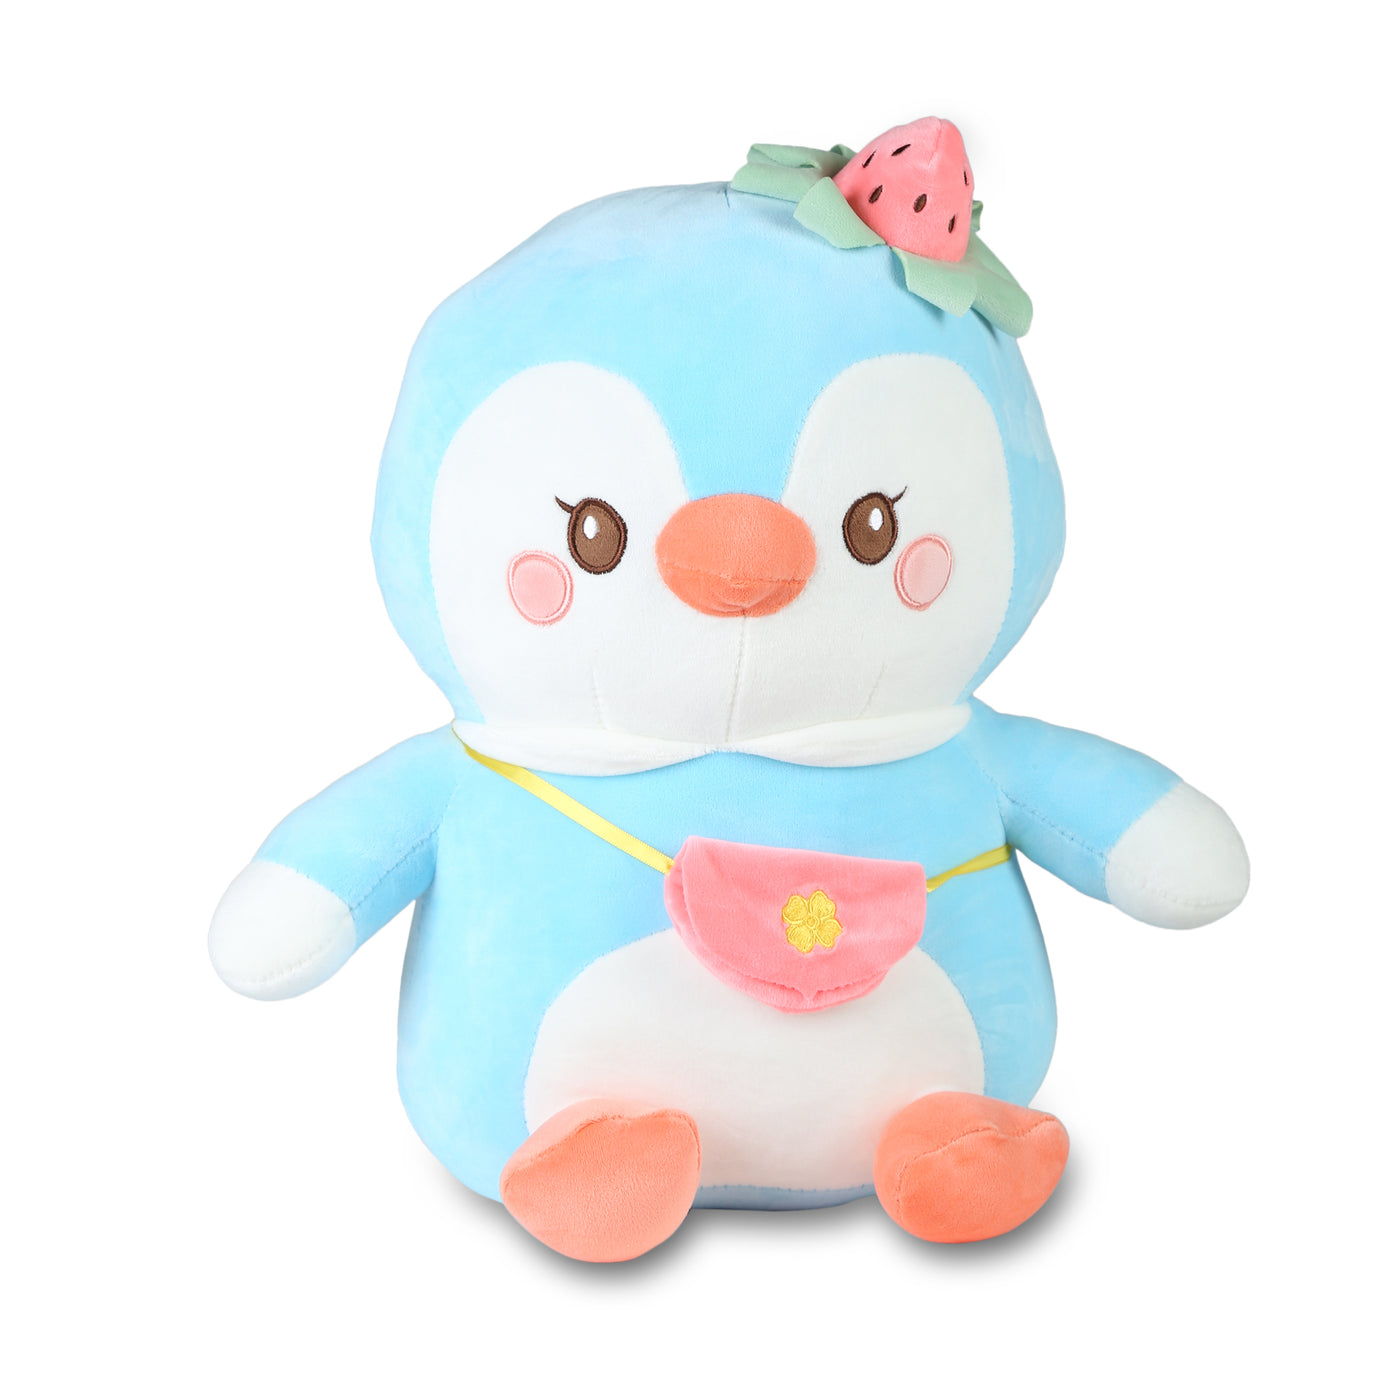 Big Size Cute Huggable Penguin Plush Toy